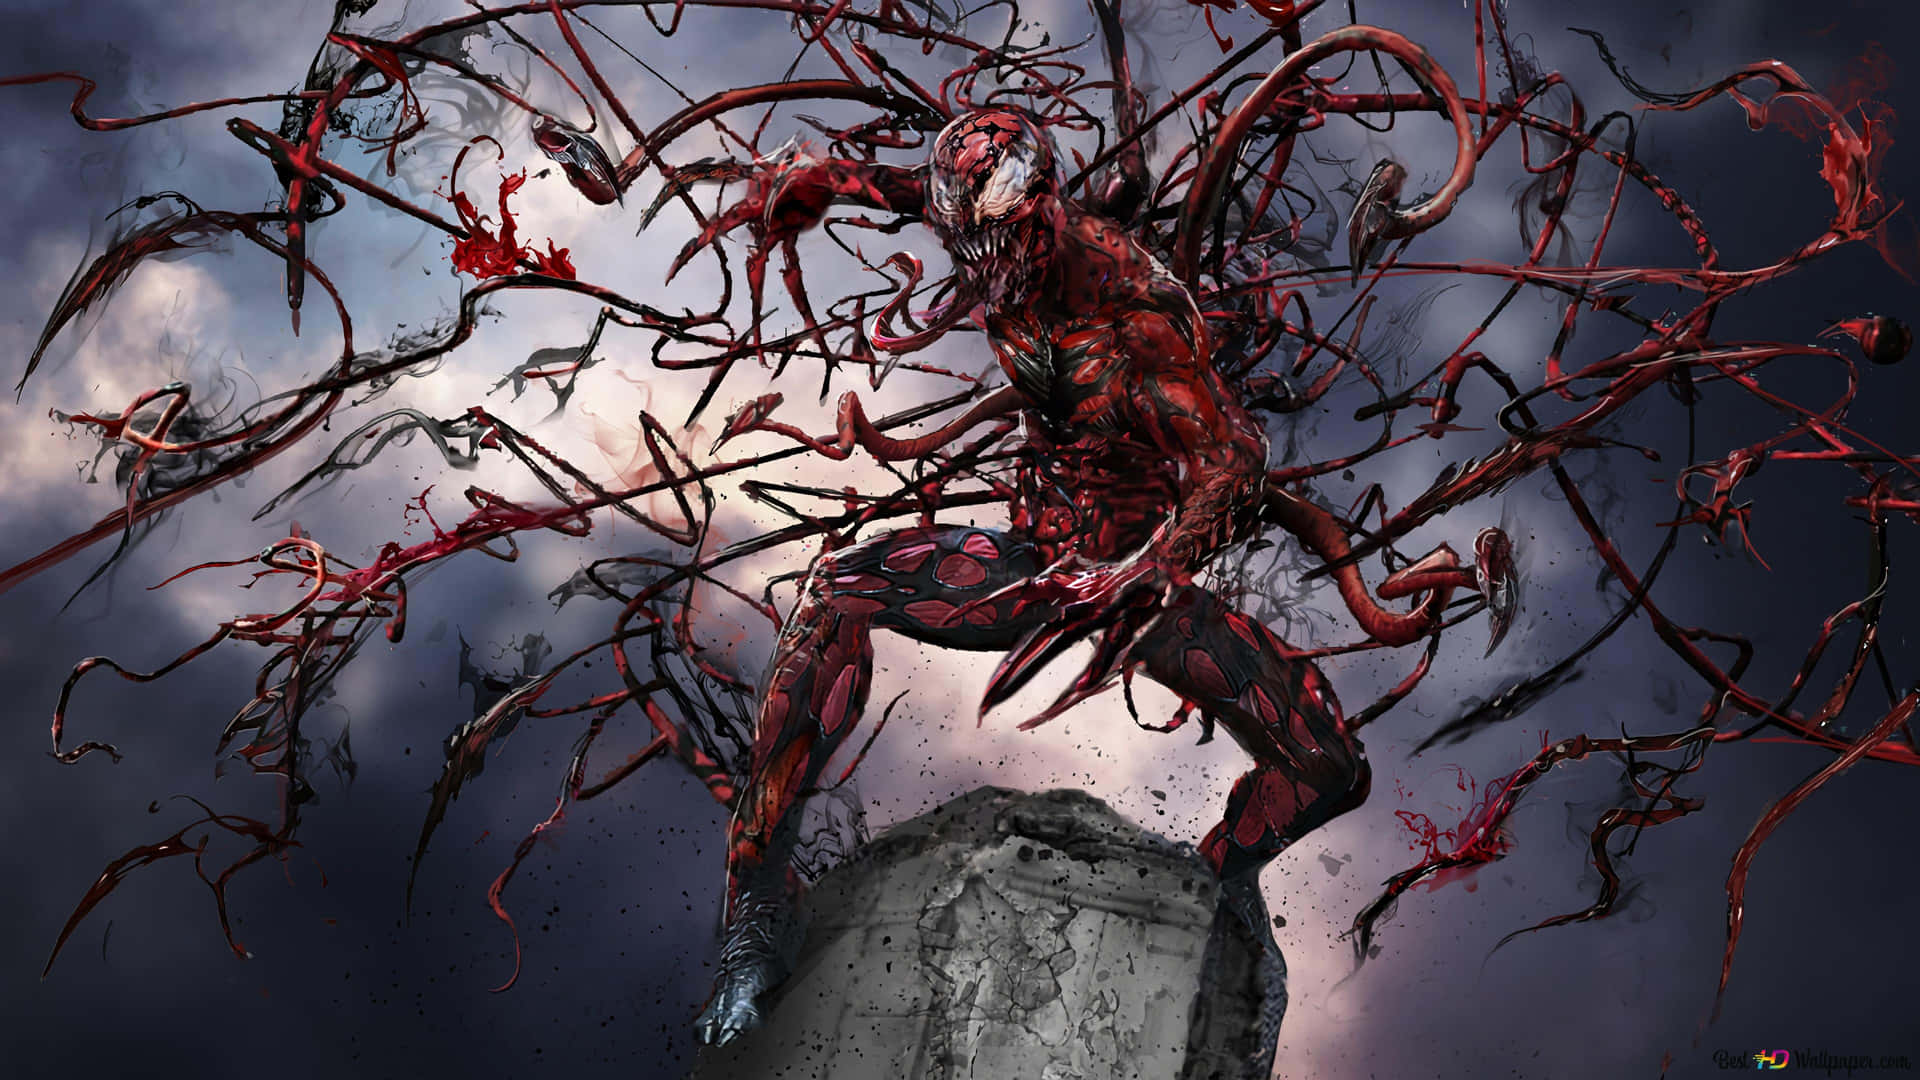 SpiderMan vs Carnage Wallpapers  Top Những Hình Ảnh Đẹp